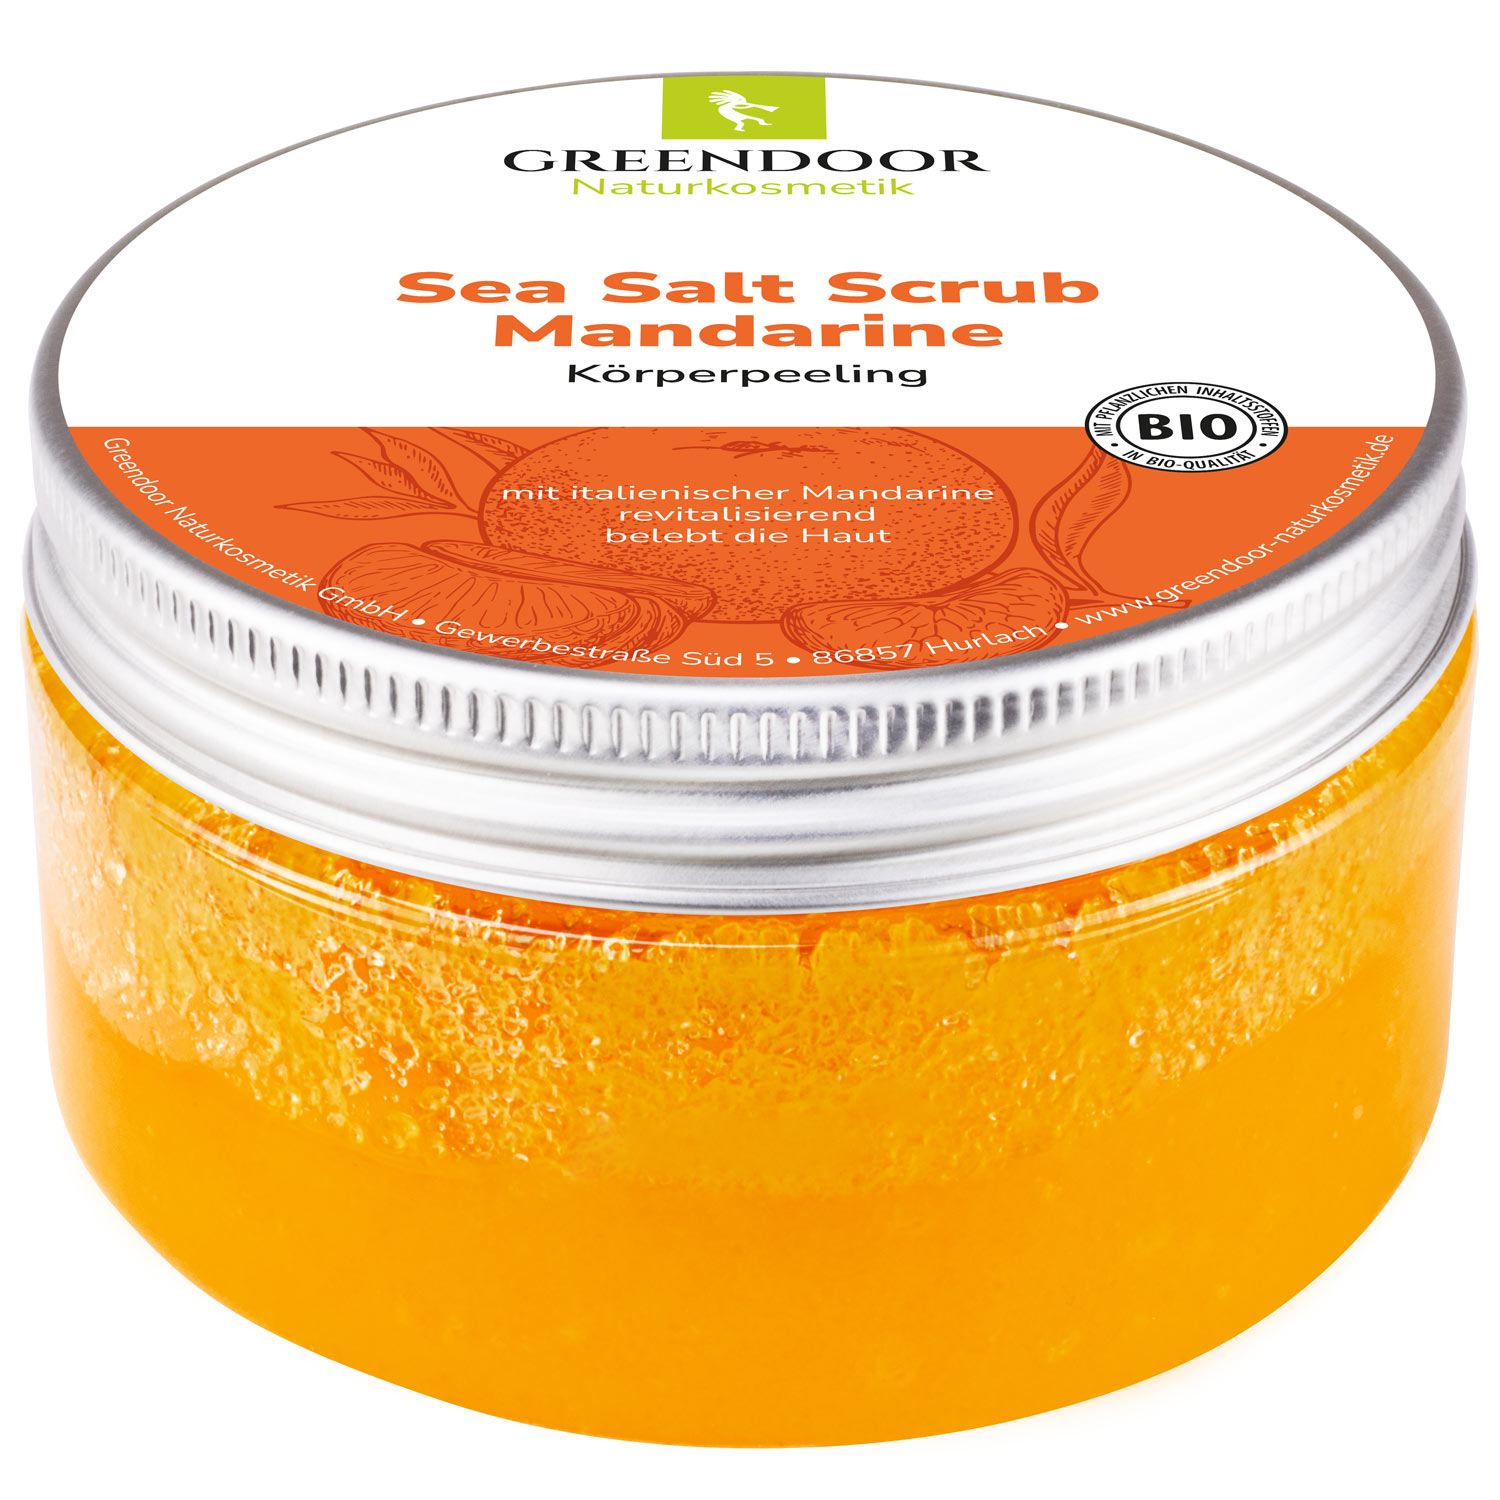 Sea Salt Scrub Mandarine, veganes Körperpeeling ohne Mikroplastik, 280g